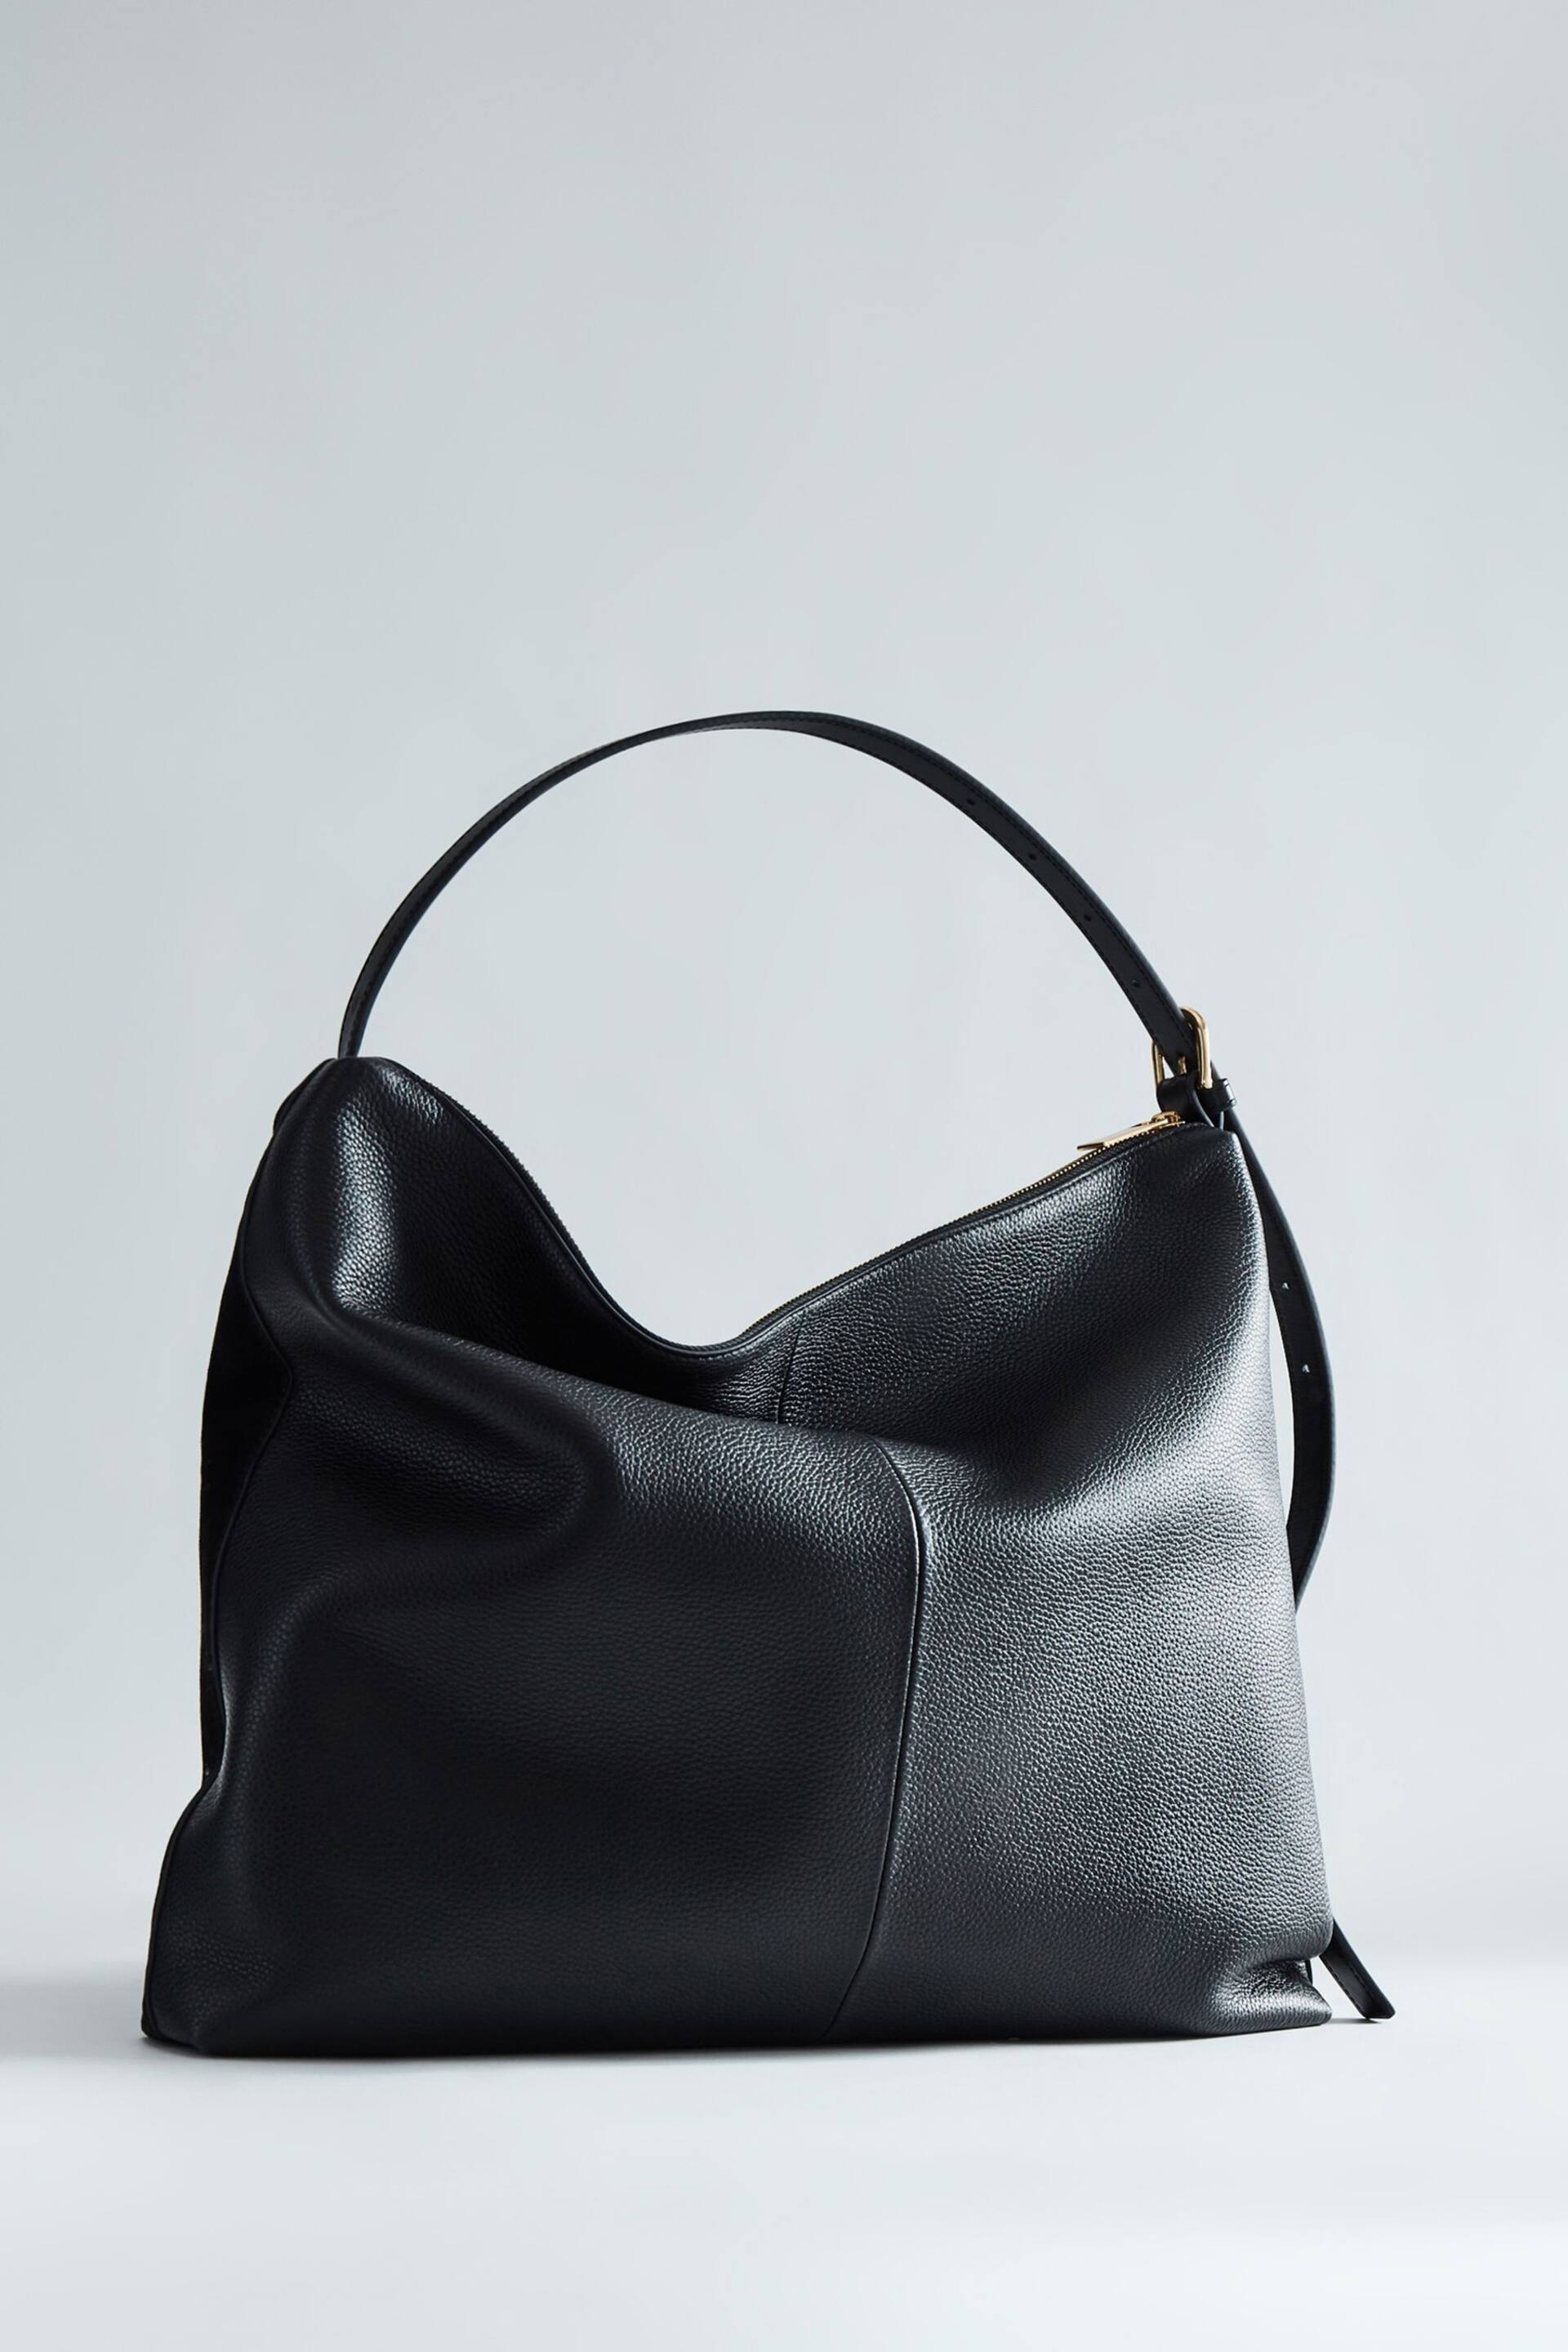 Reiss Black Vigo Leather Suede Handbag - Image 1 of 6